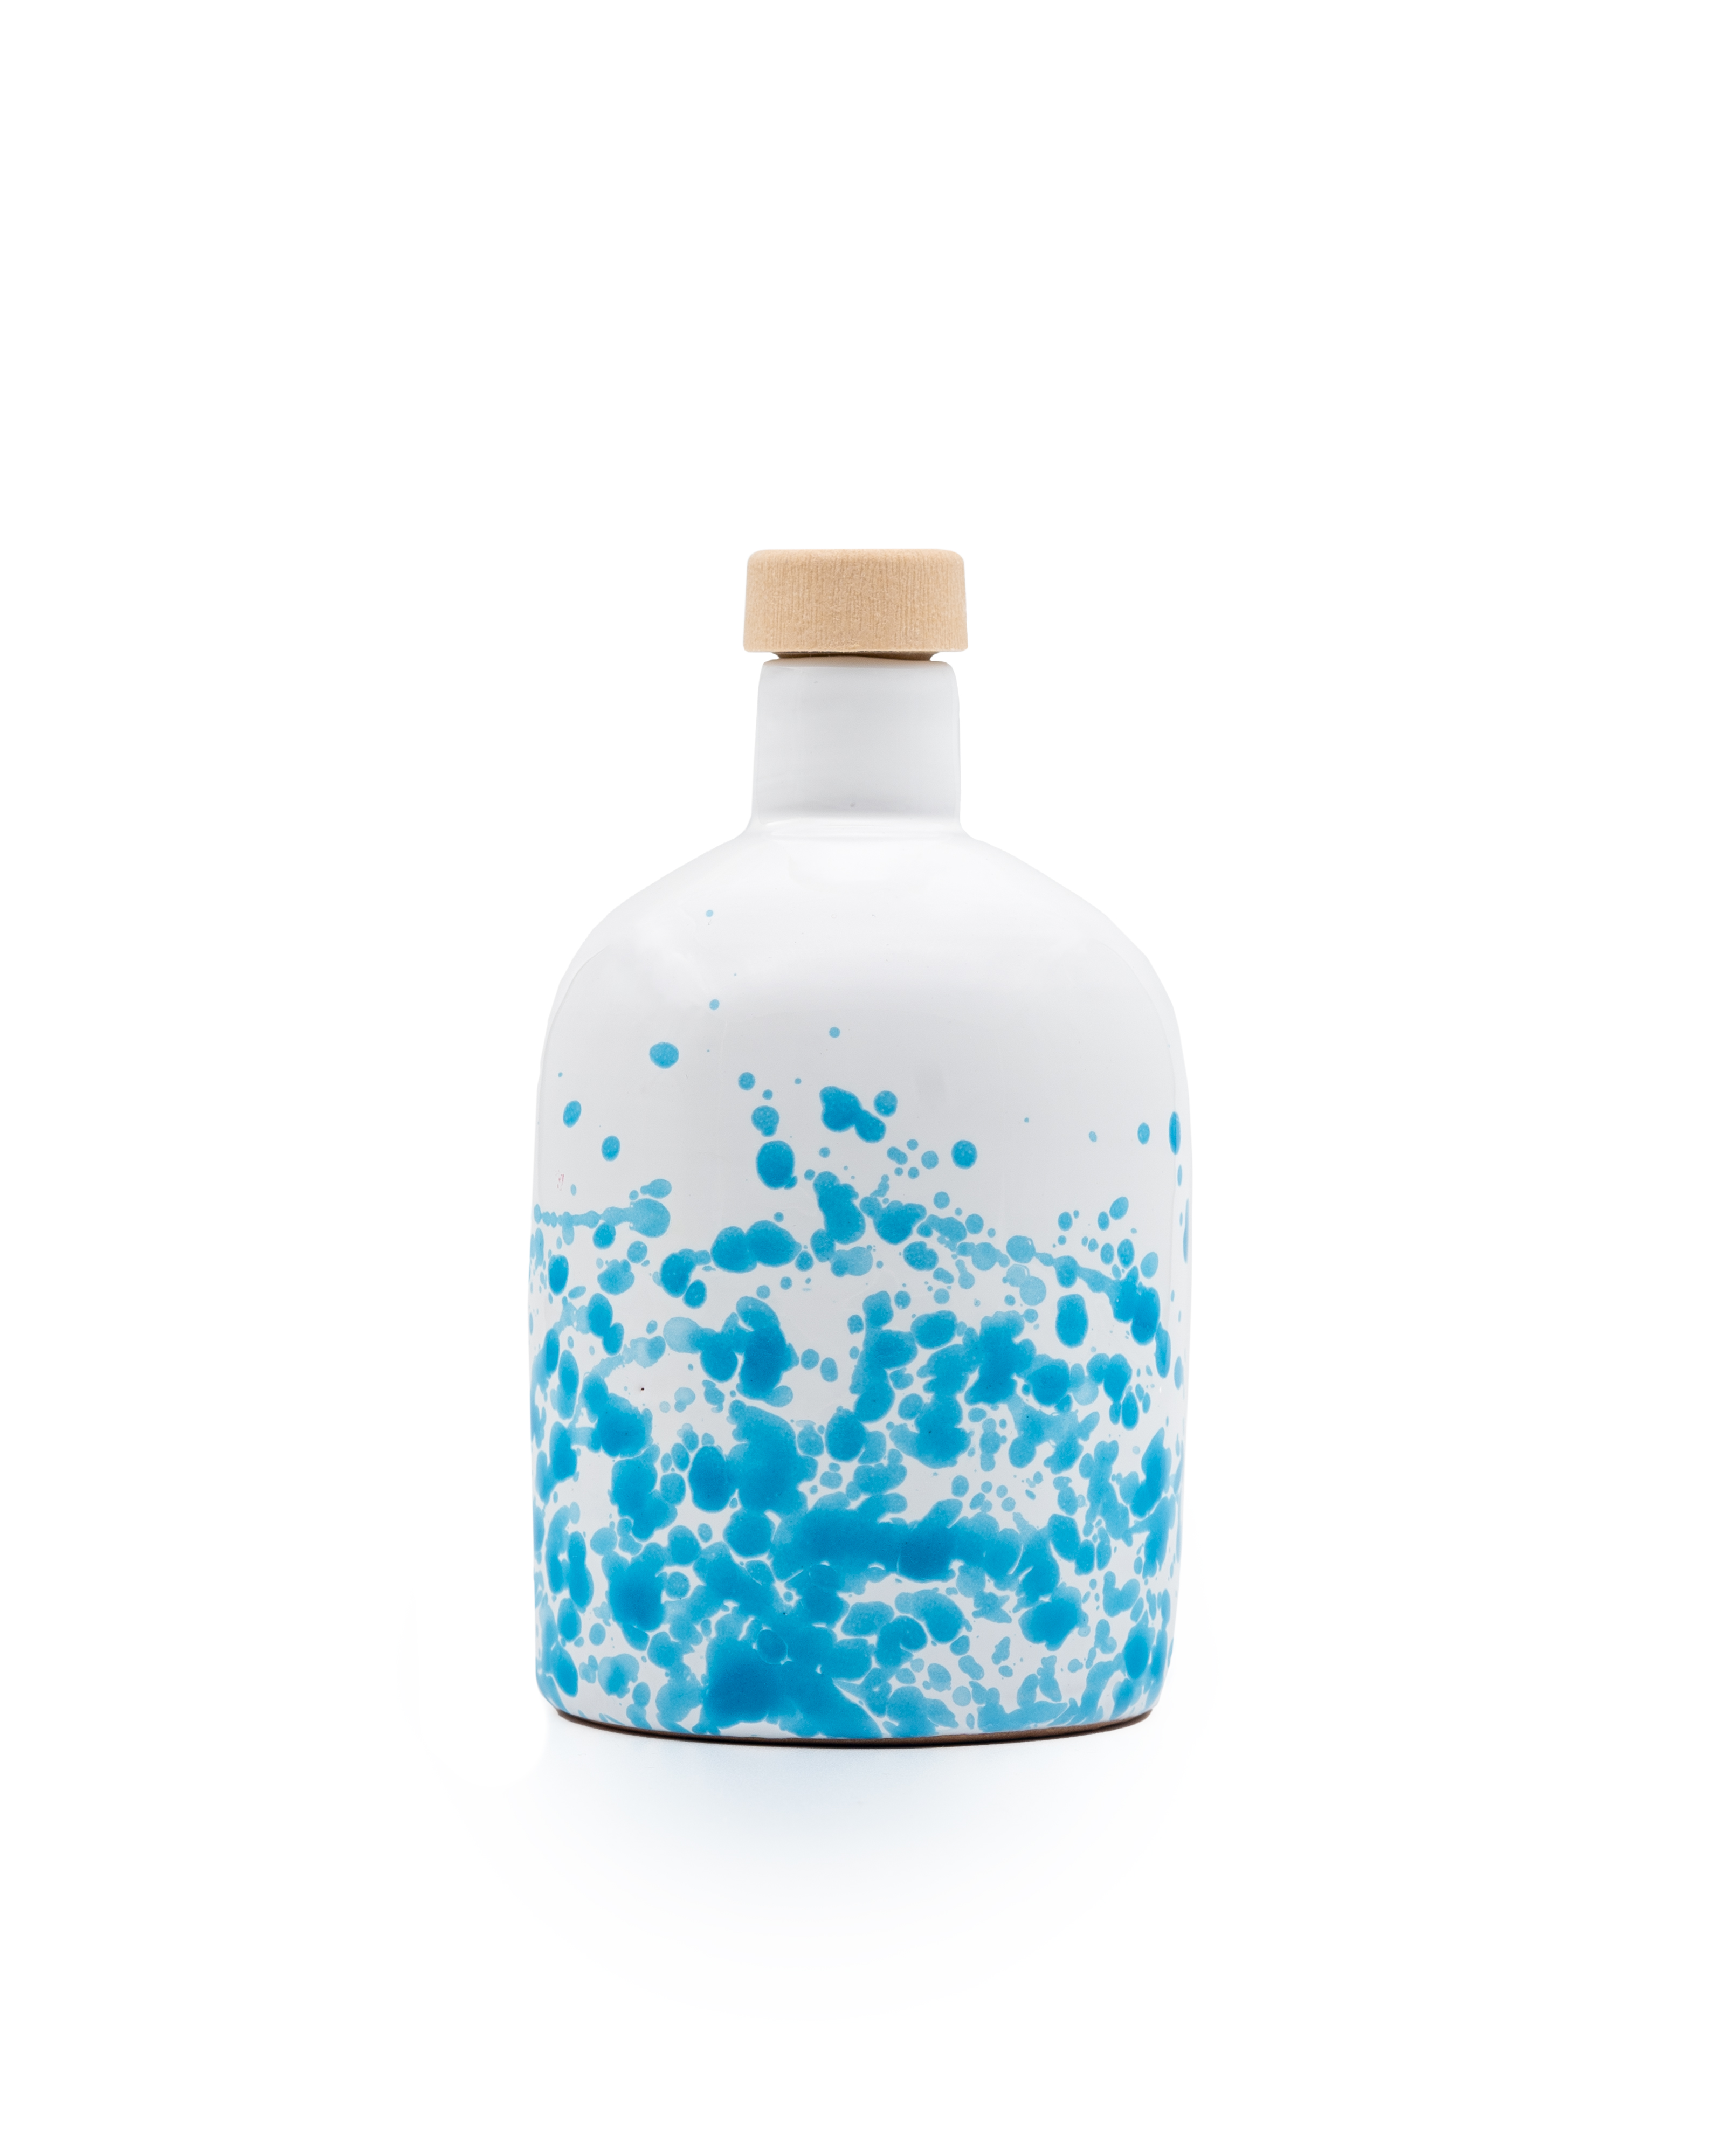 ALLEGRO natifs Huile d'olive extra vierge biologique, filtrée, bouteille en céramique bleue de 250 ml.